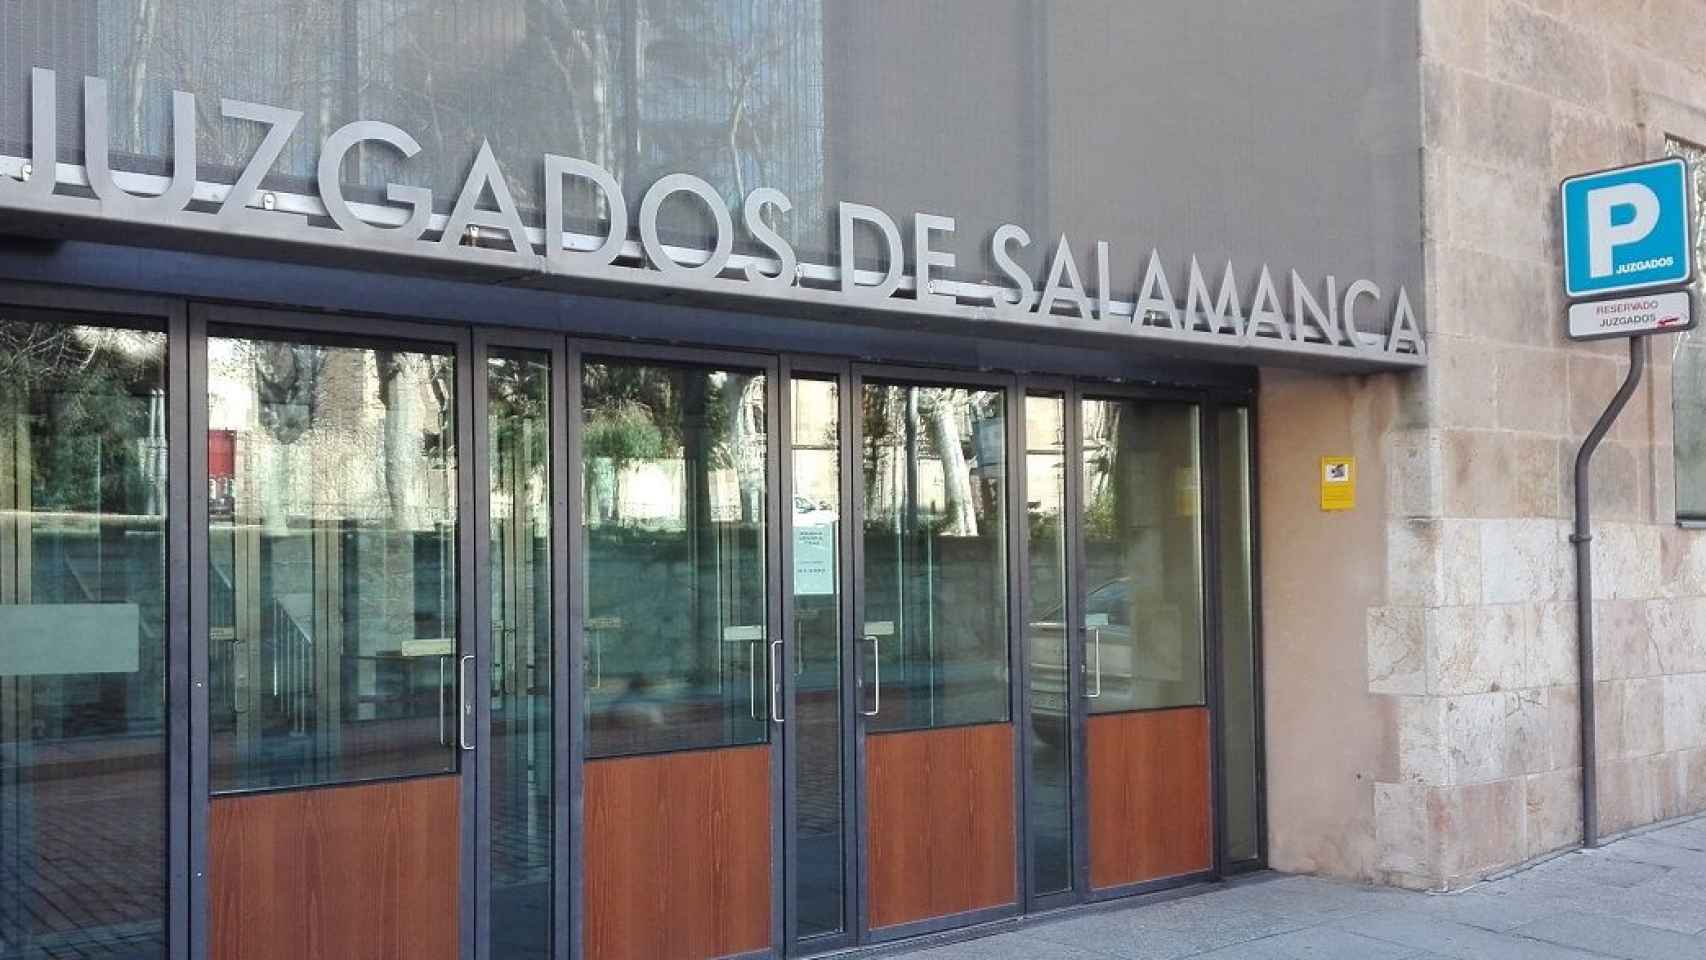 Juzgados de Salamanca sitos en la plaza de Colón